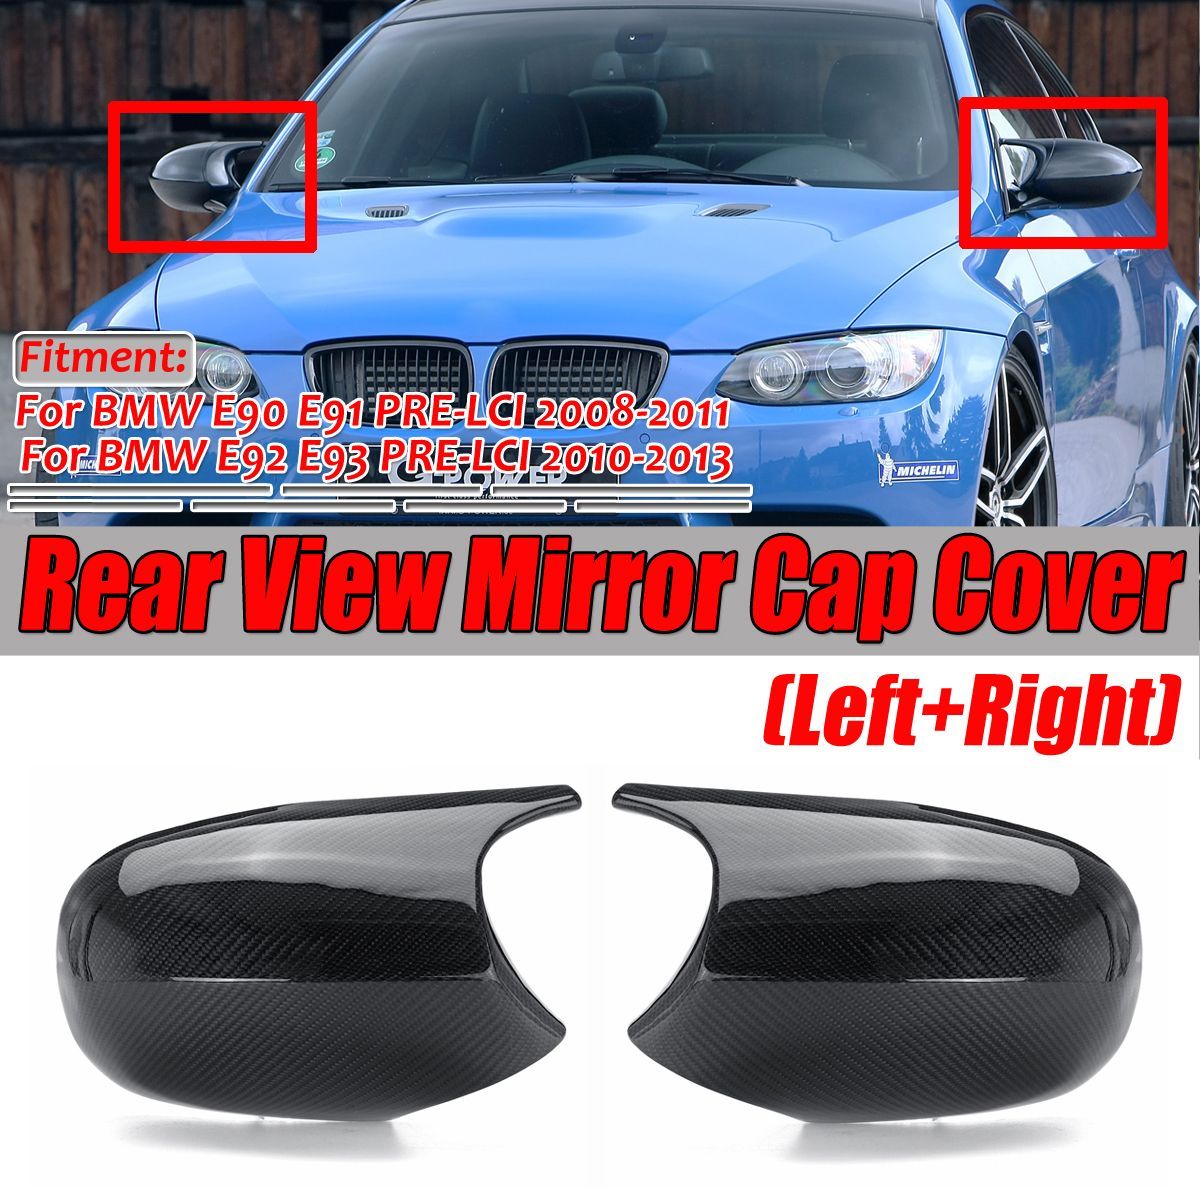 2Pcs-Car-M3-Sytle-Real-Carbon-Fiber-Rear-View-Mirror-Caps-Covers-For-BMW-E90-E91-2008-2011-E92-E93-2-1662711